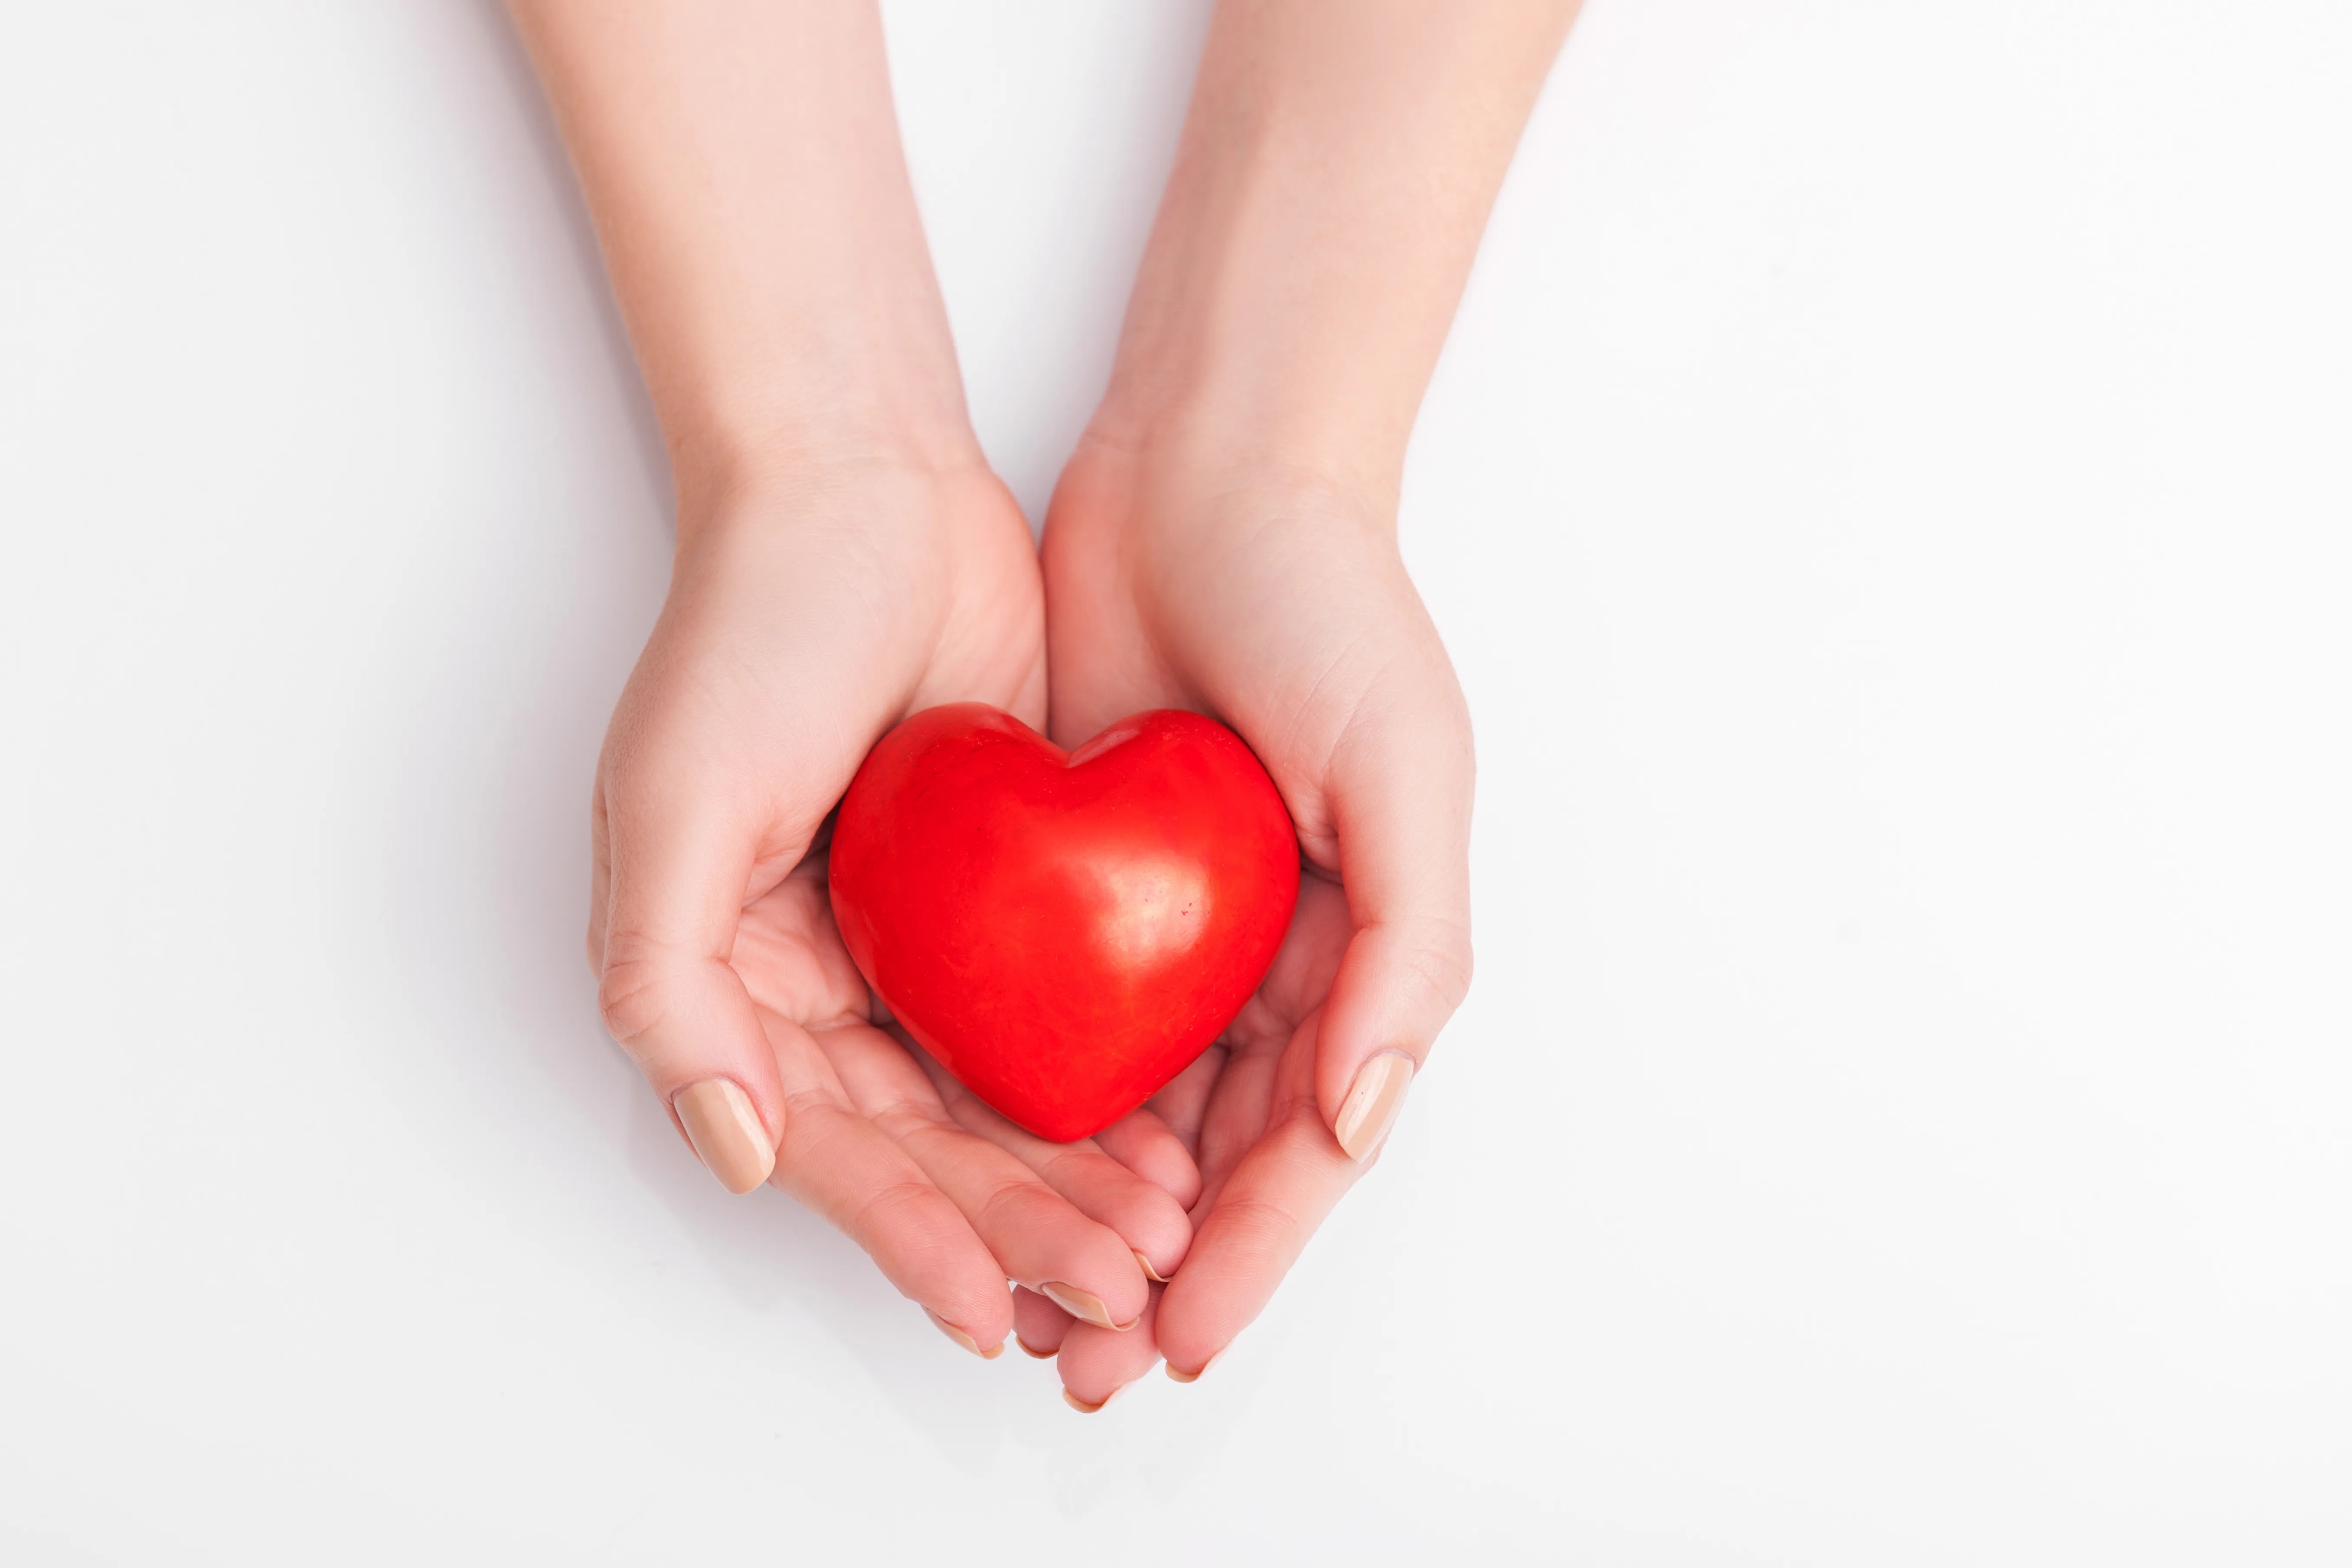 Sinais e sintomas de ataque cardíaco: Como saber se você está tendo um ataque cardíaco